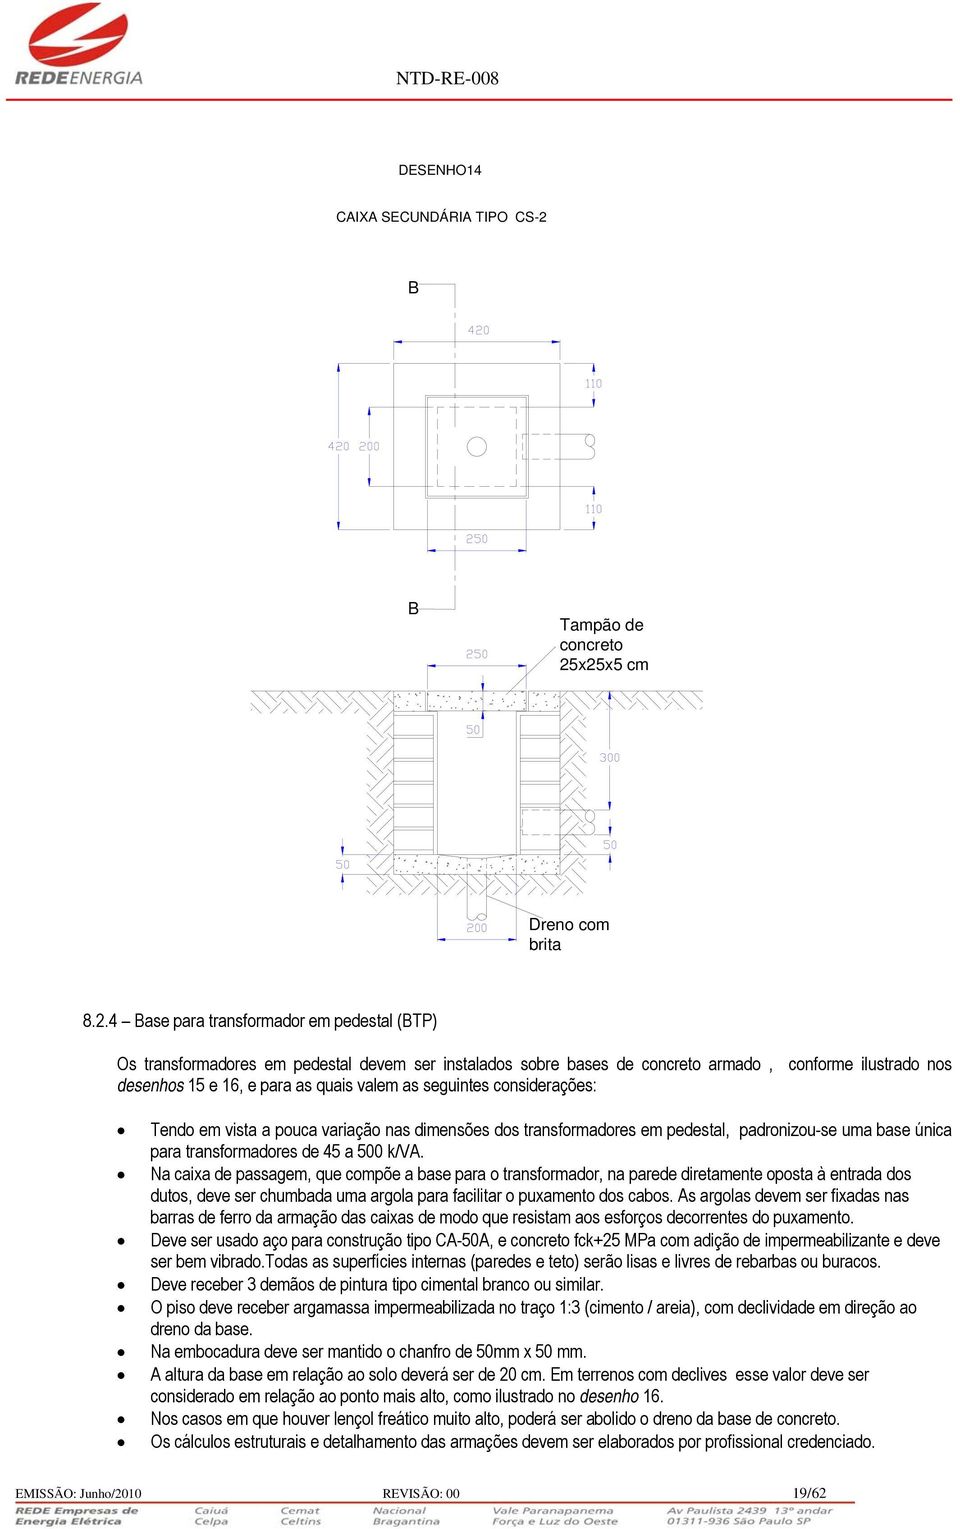 x25x5 cm Dreno com brita 8.2.4 Base para transformador em pedestal (BTP) Os transformadores em pedestal devem ser instalados sobre bases de concreto armado, conforme ilustrado nos desenhos 15 e 16, e